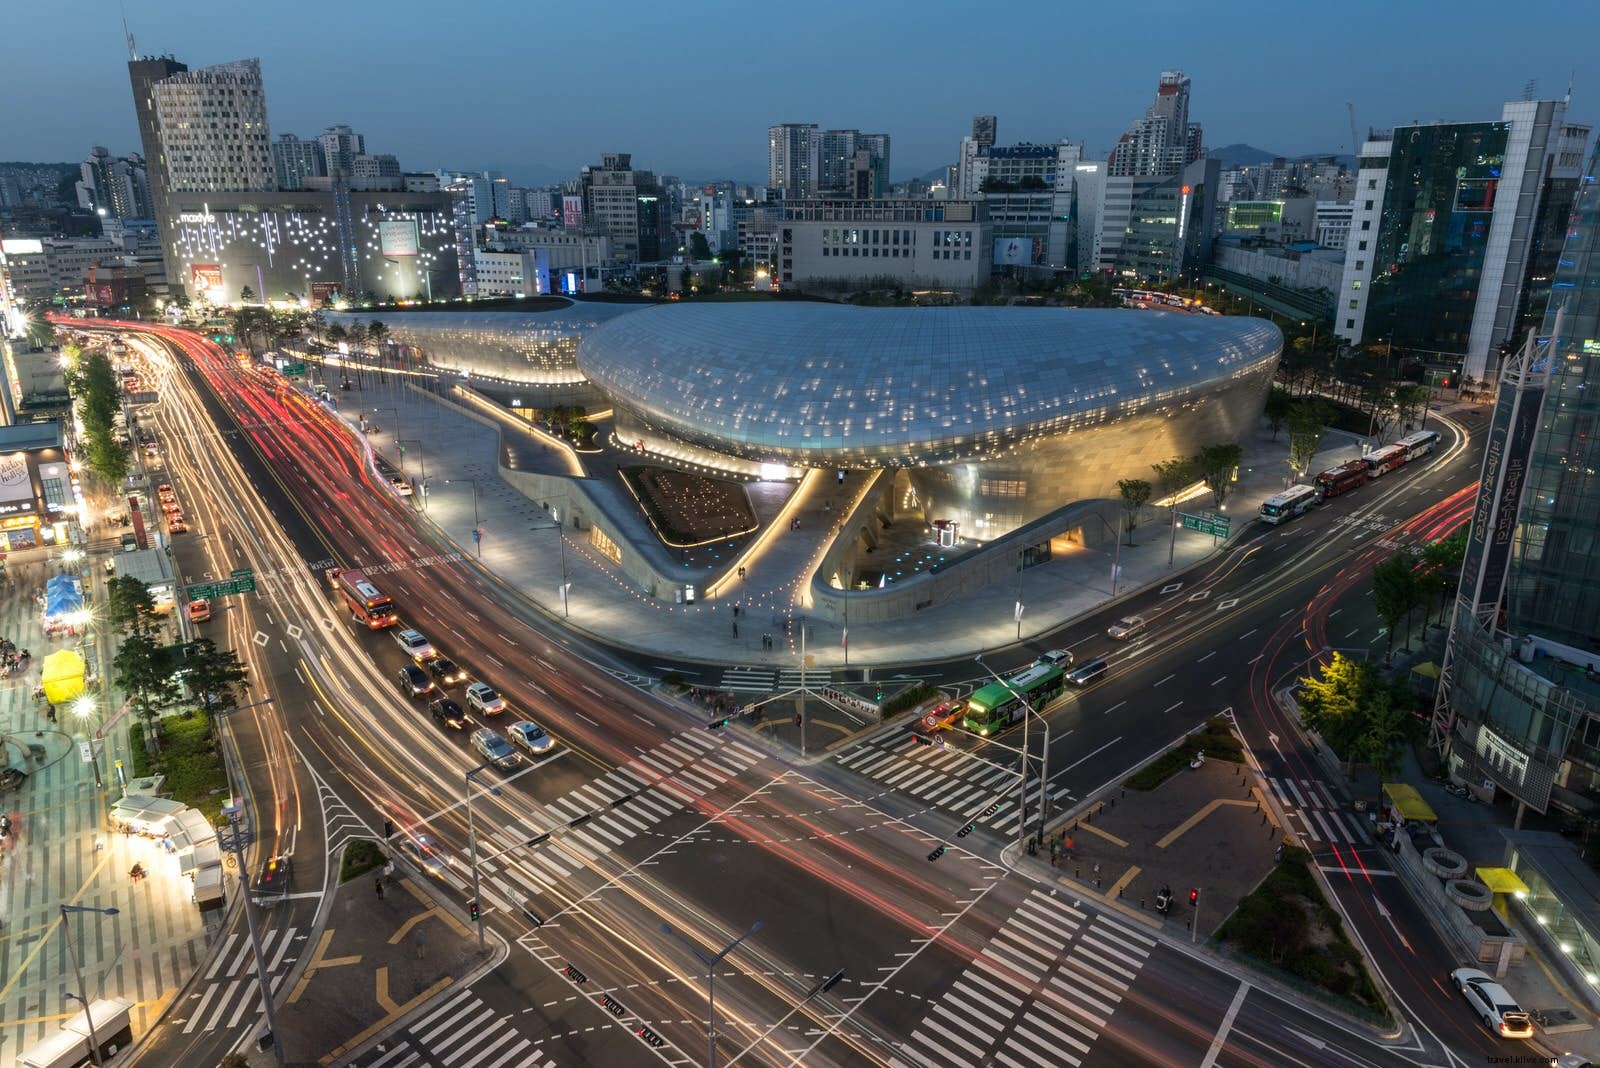 El dinámico paisaje urbano de Seúl:un recorrido arquitectónico por la capital de Corea del Sur 